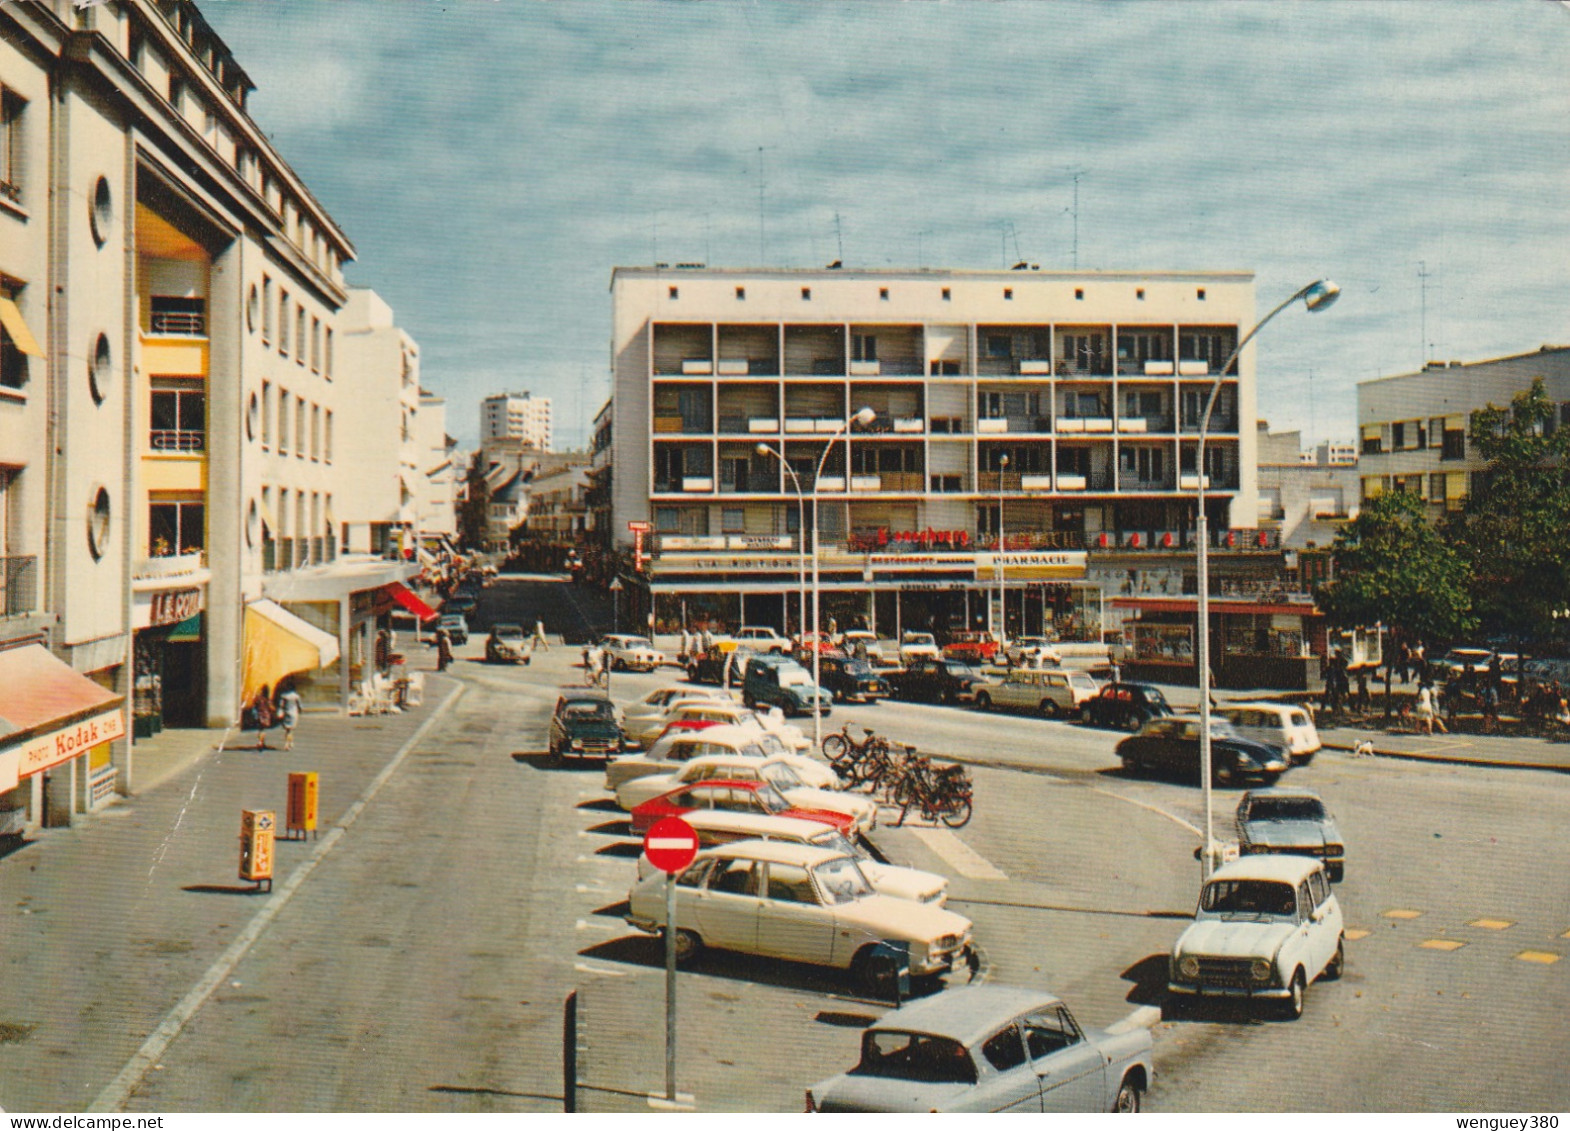 56 LORIENT  Place Aristide Briand.  SUP PLAN.    Env. 1965.      RARE.   Voir Description - Lorient